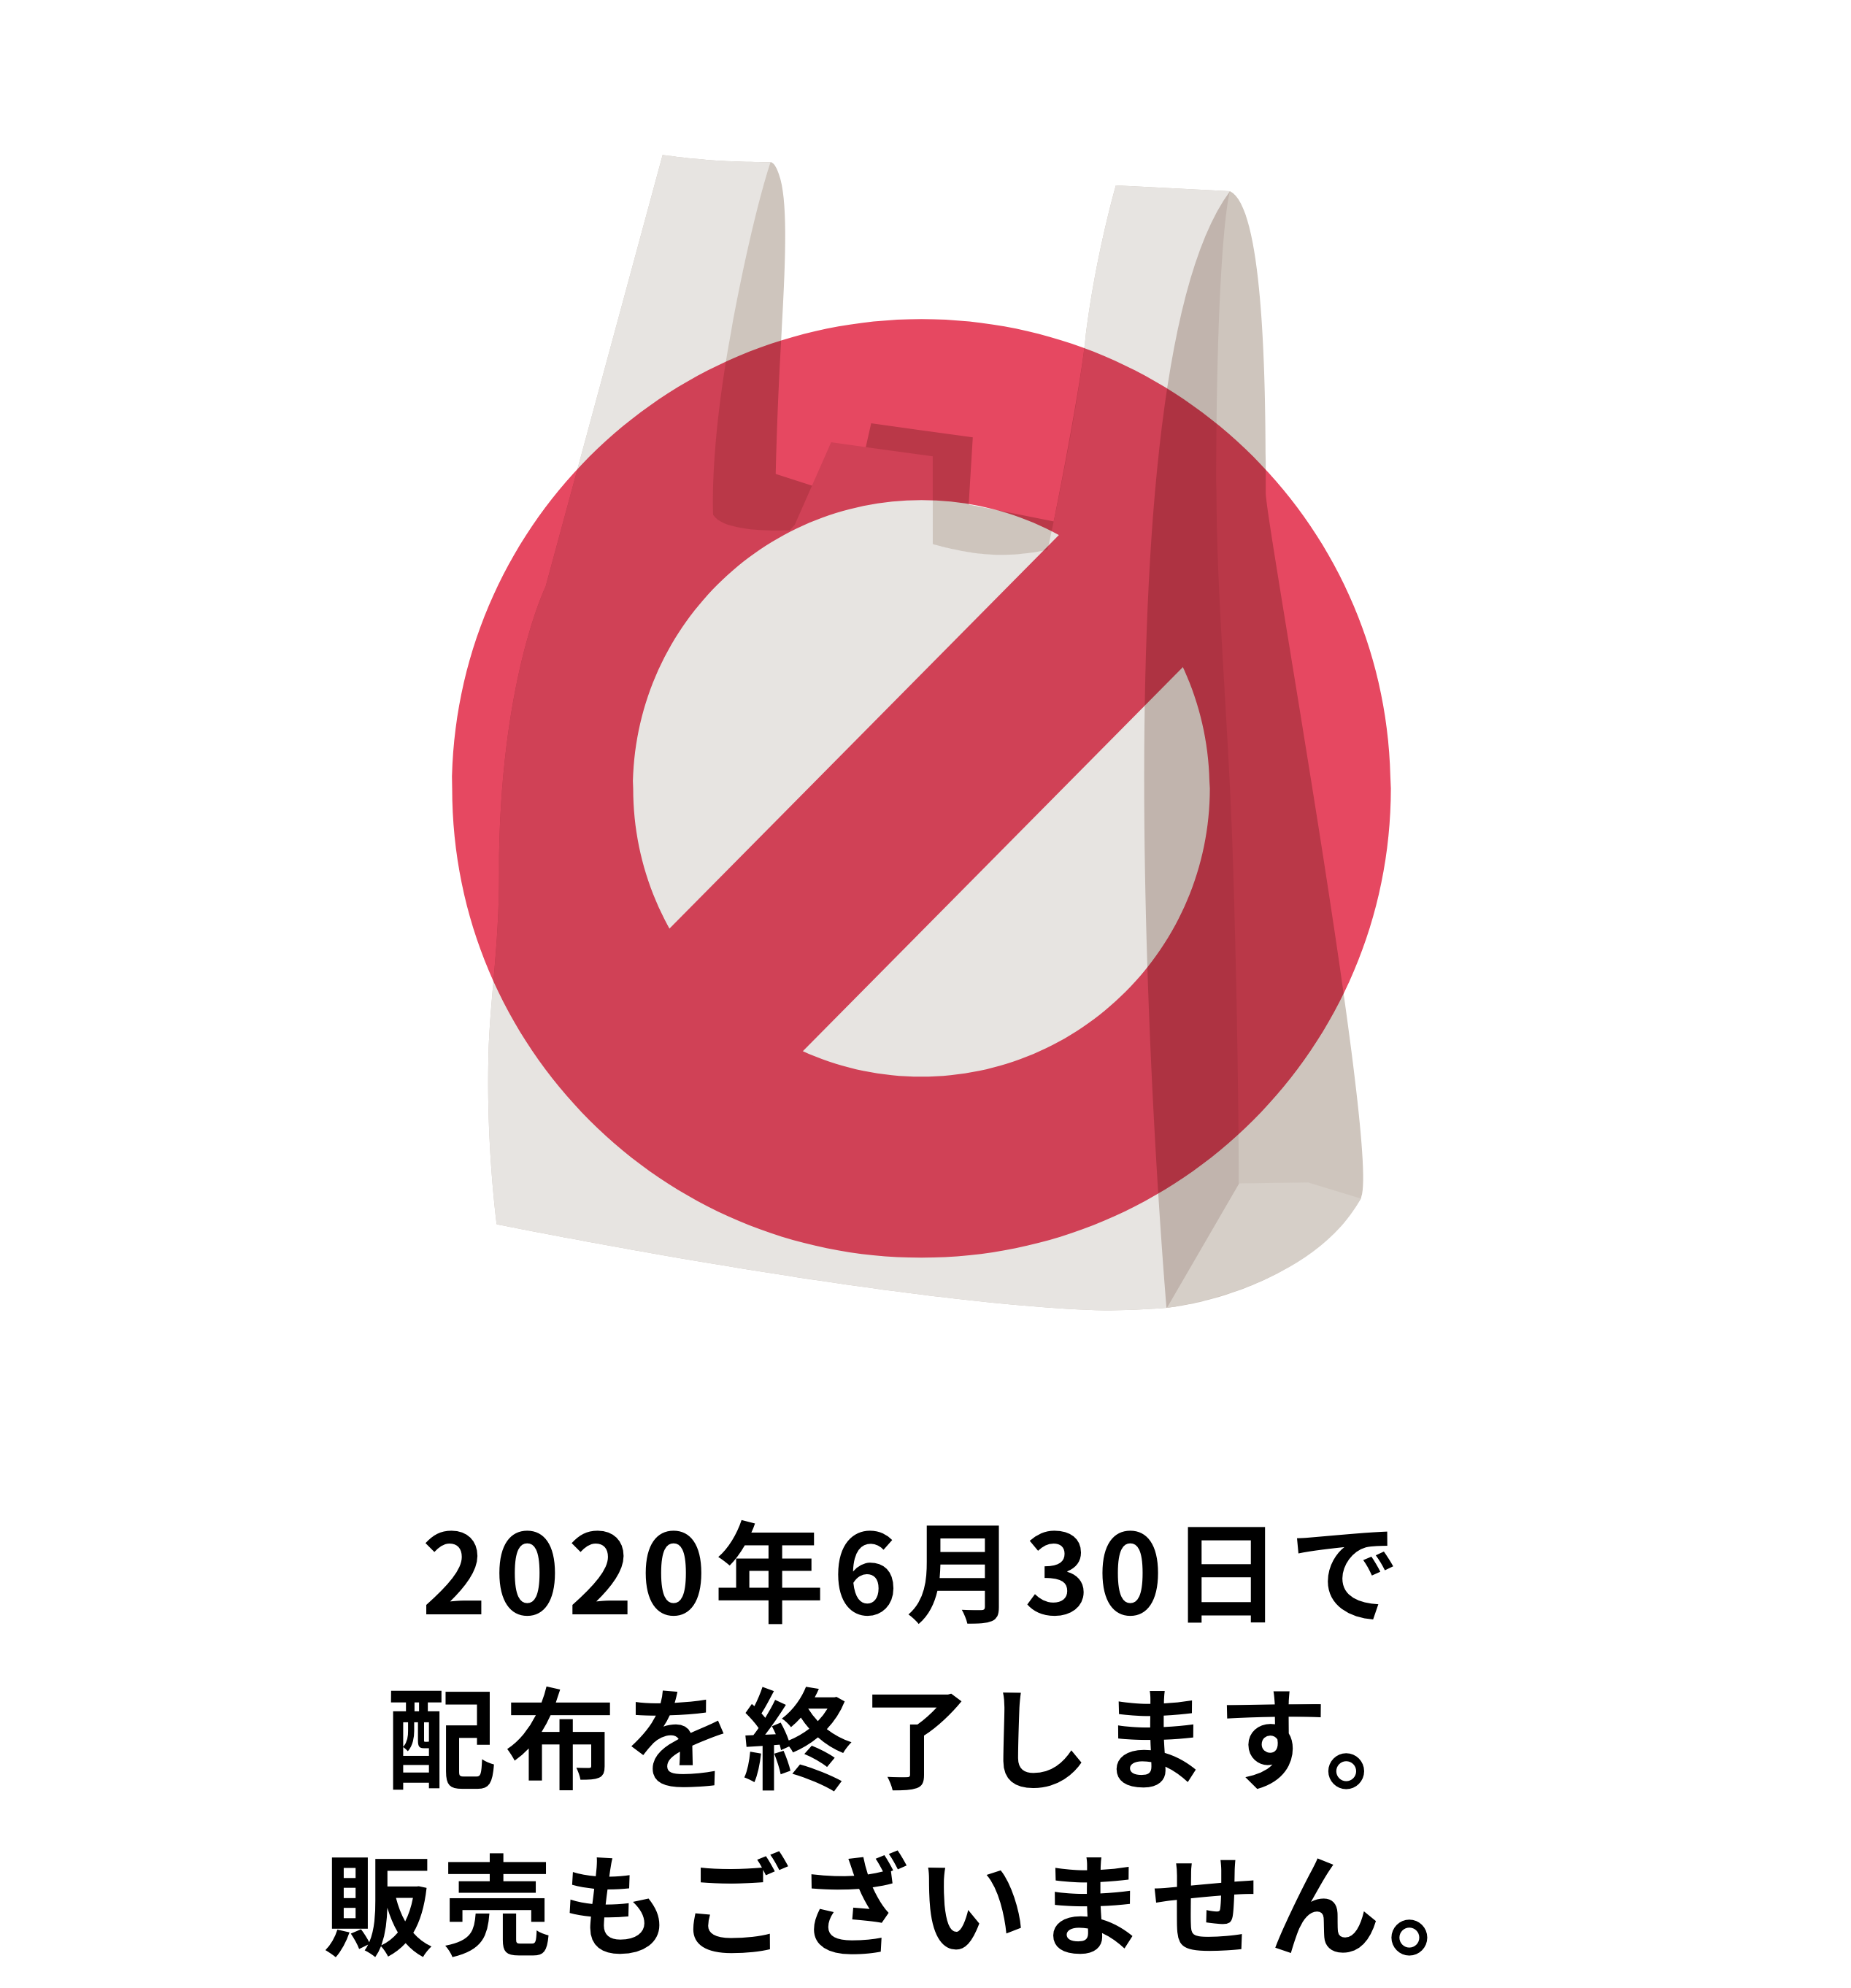 2020年7⽉1⽇（⽔）よりプラスチック製ビニール袋の 無料配布を終了いたします。